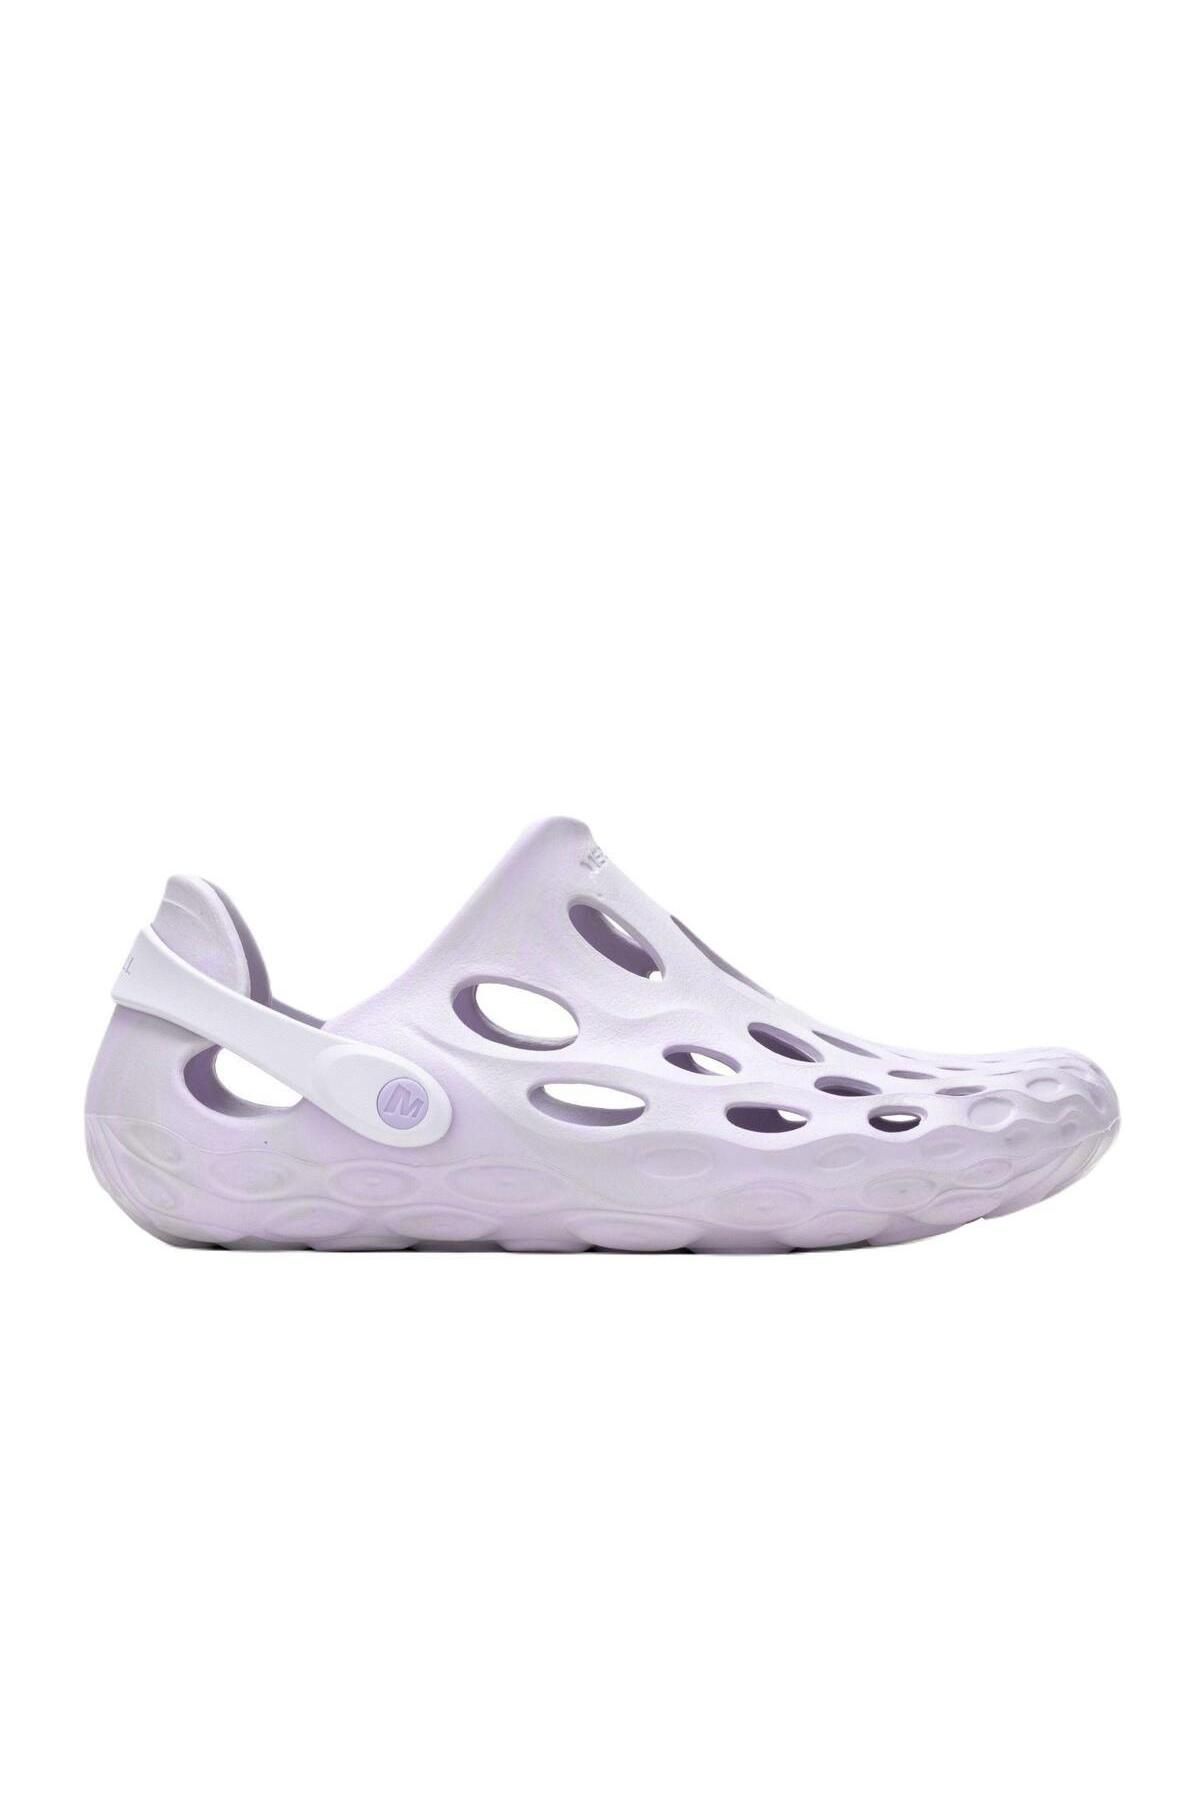 Merrell J006143 Hydro Moc Erkek Su Ayakkabısı